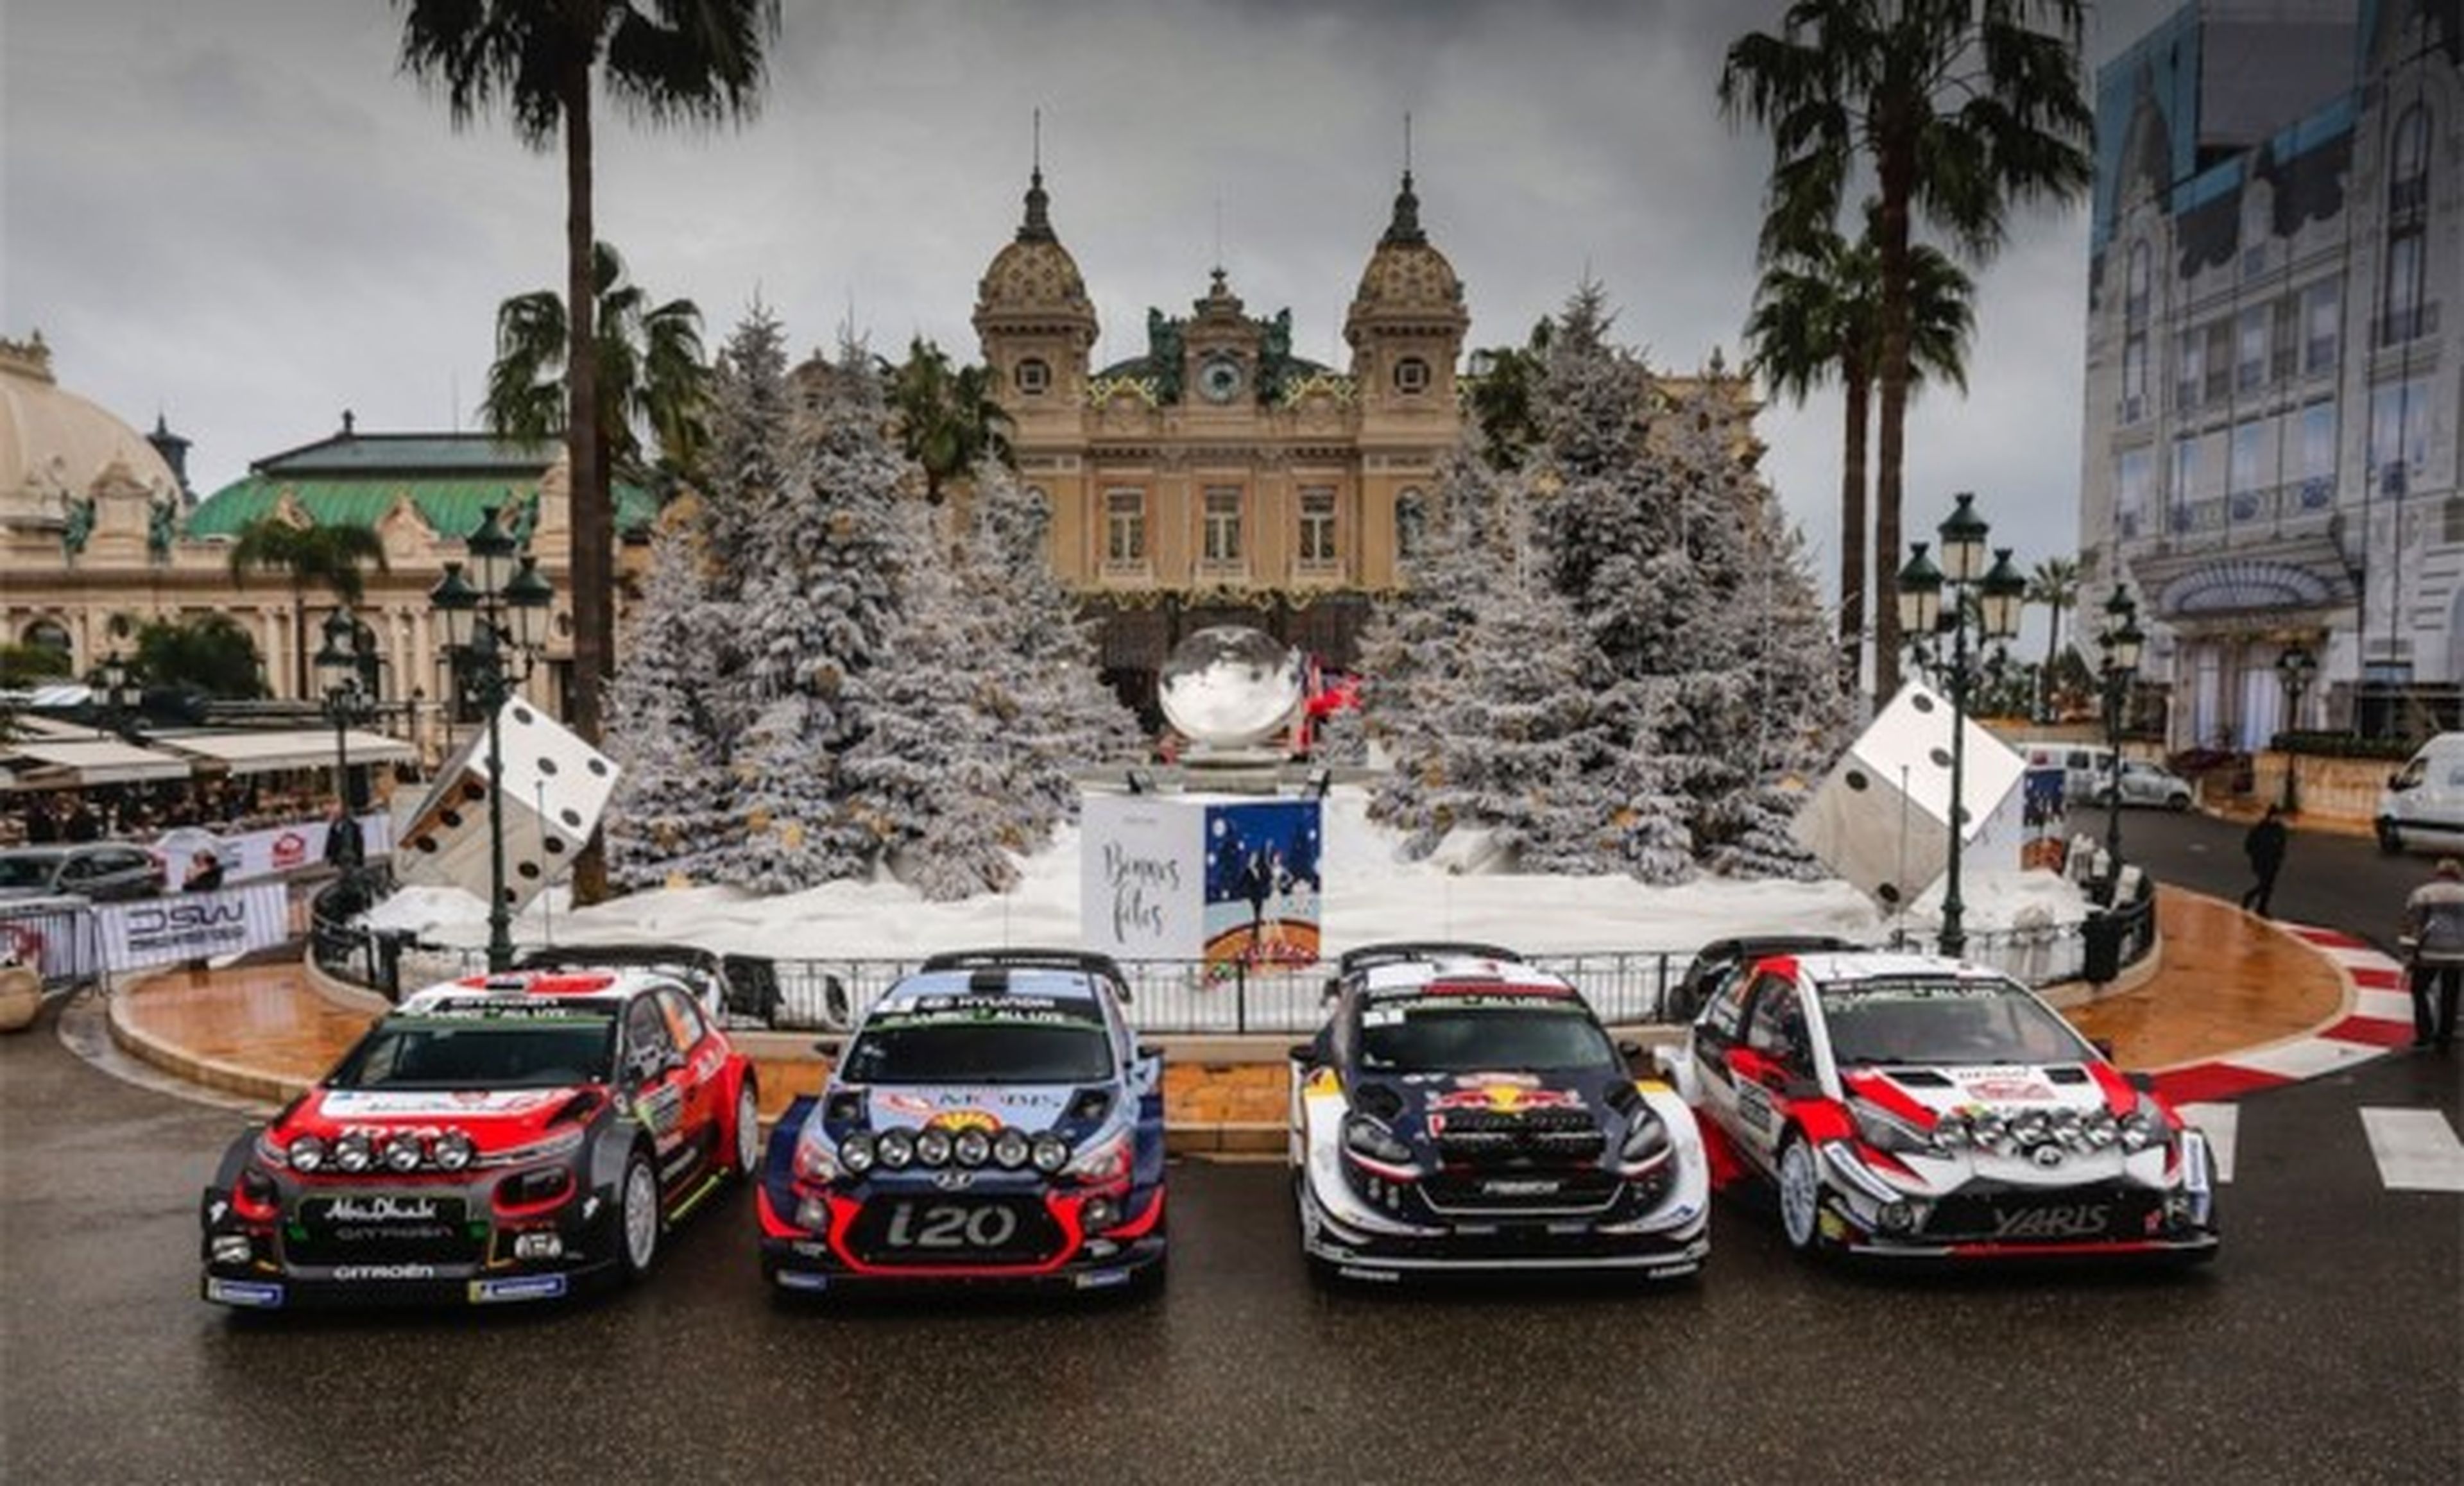 WRC 2018 Cars